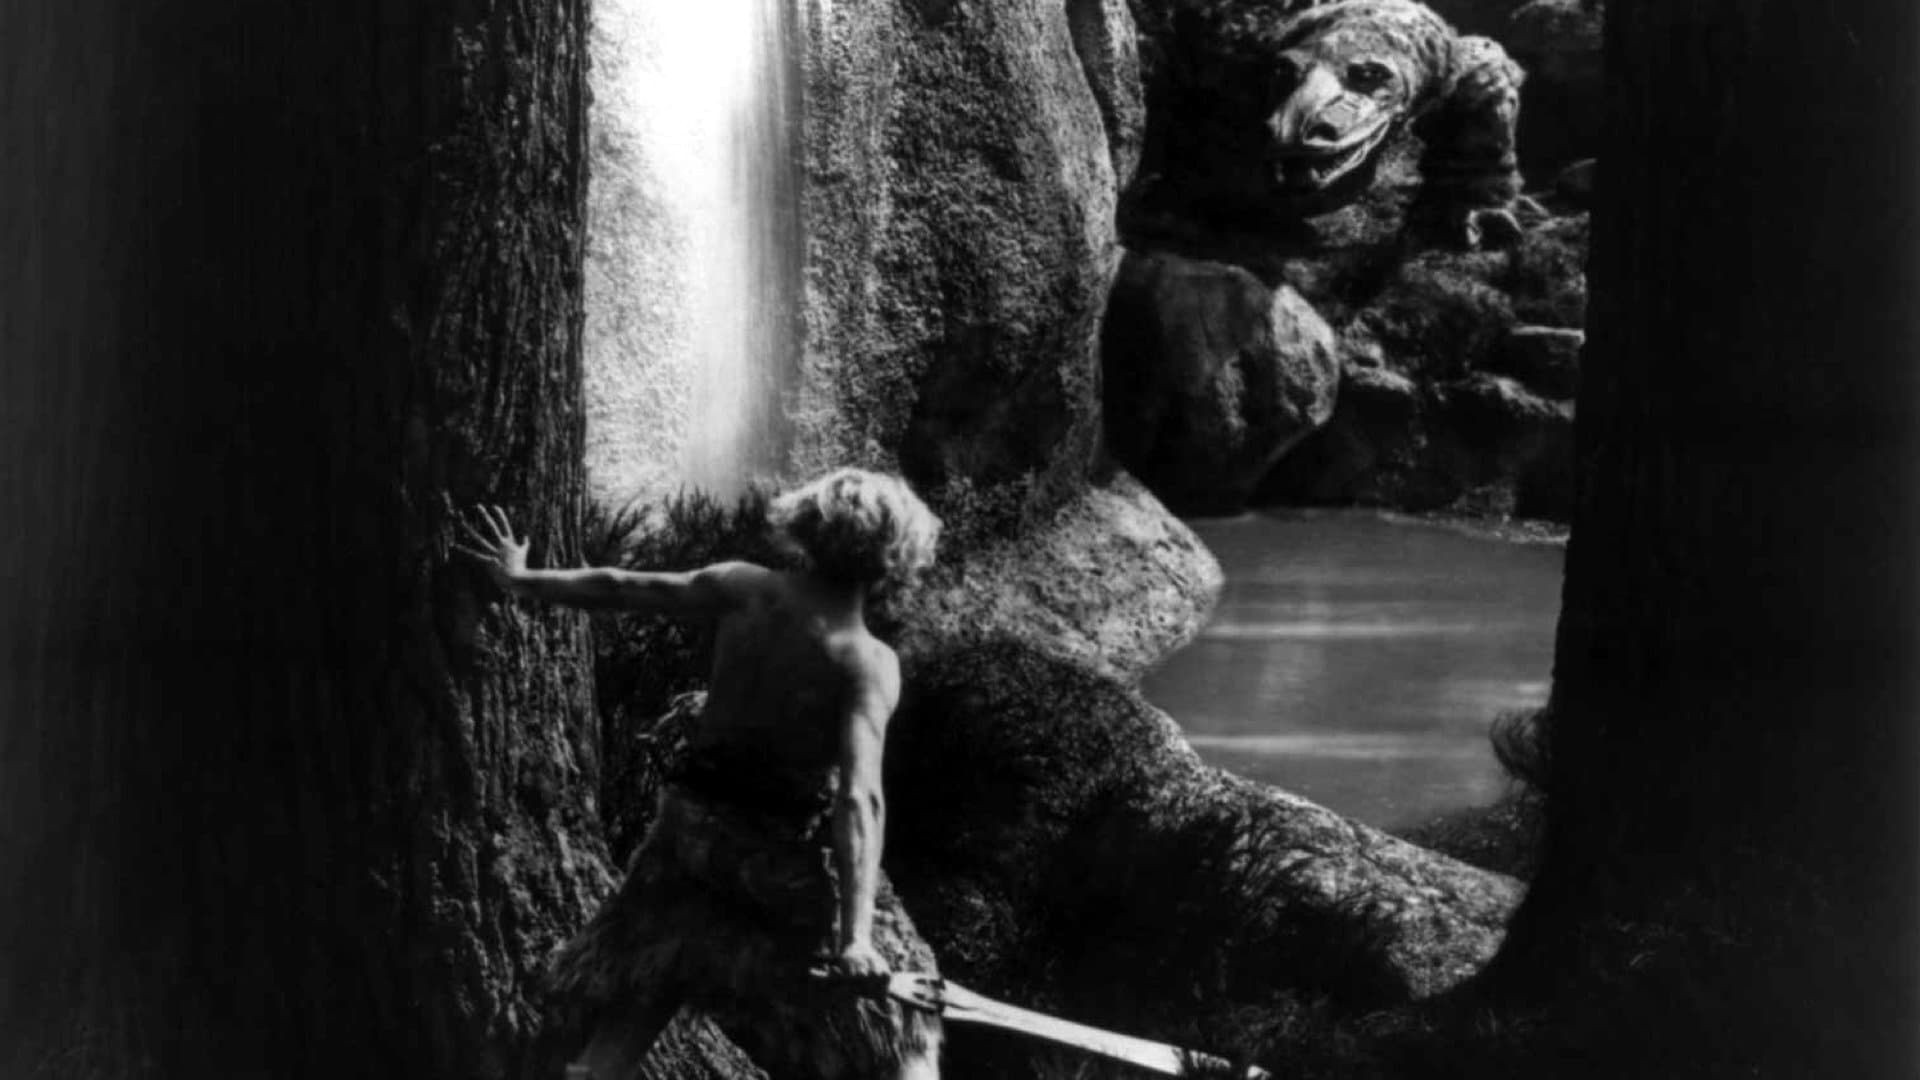 Die Nibelungen: Siegfried (1924)